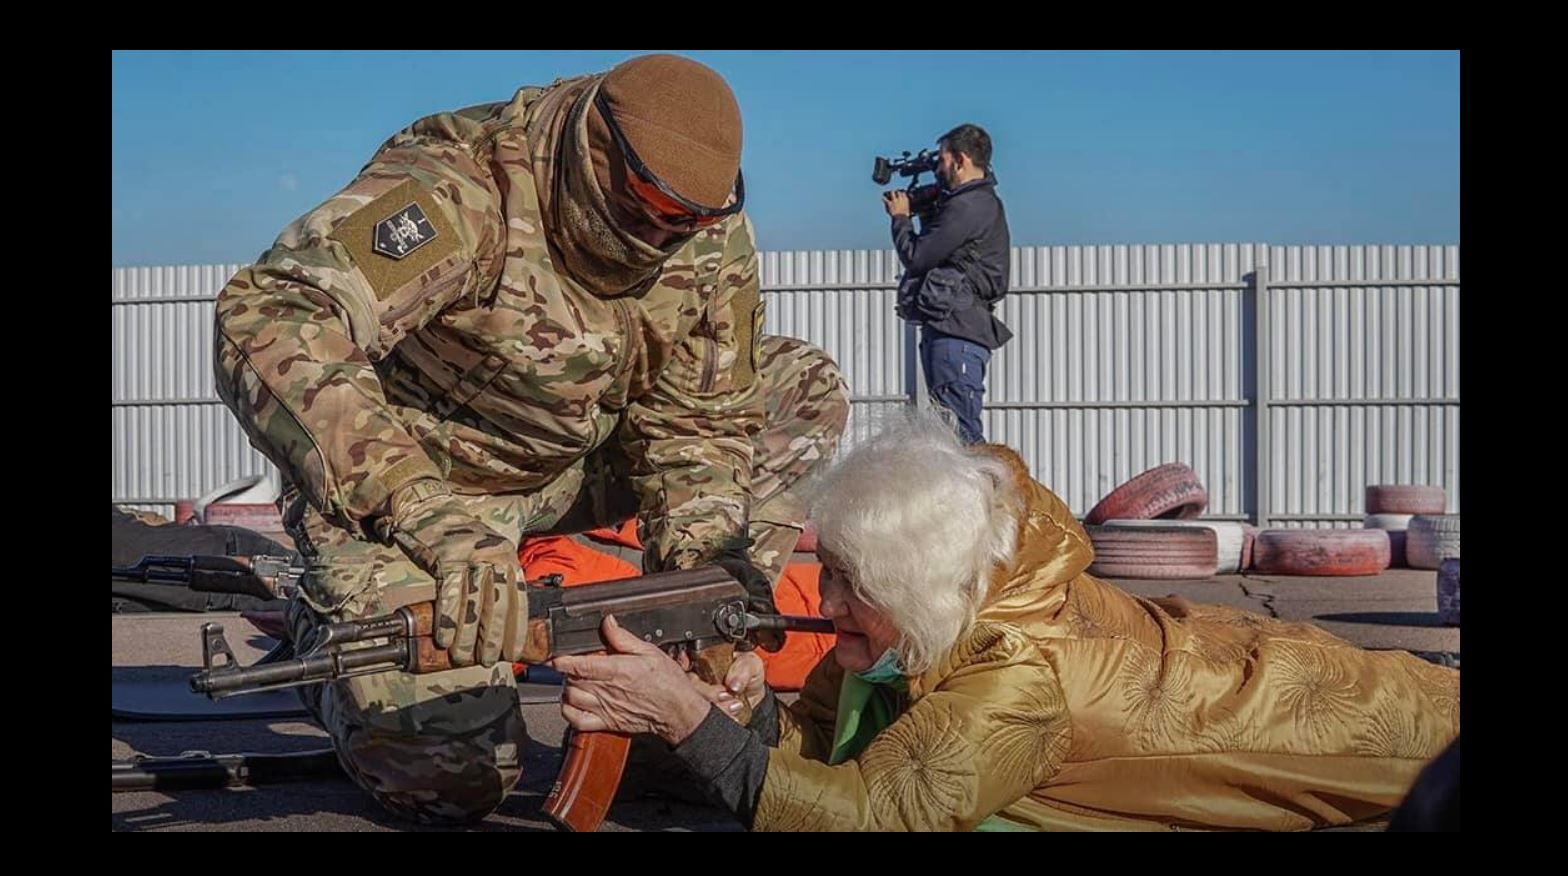 "В бой идут даже старики", - бабушка с автоматом стала знаменитостью в соцсетях